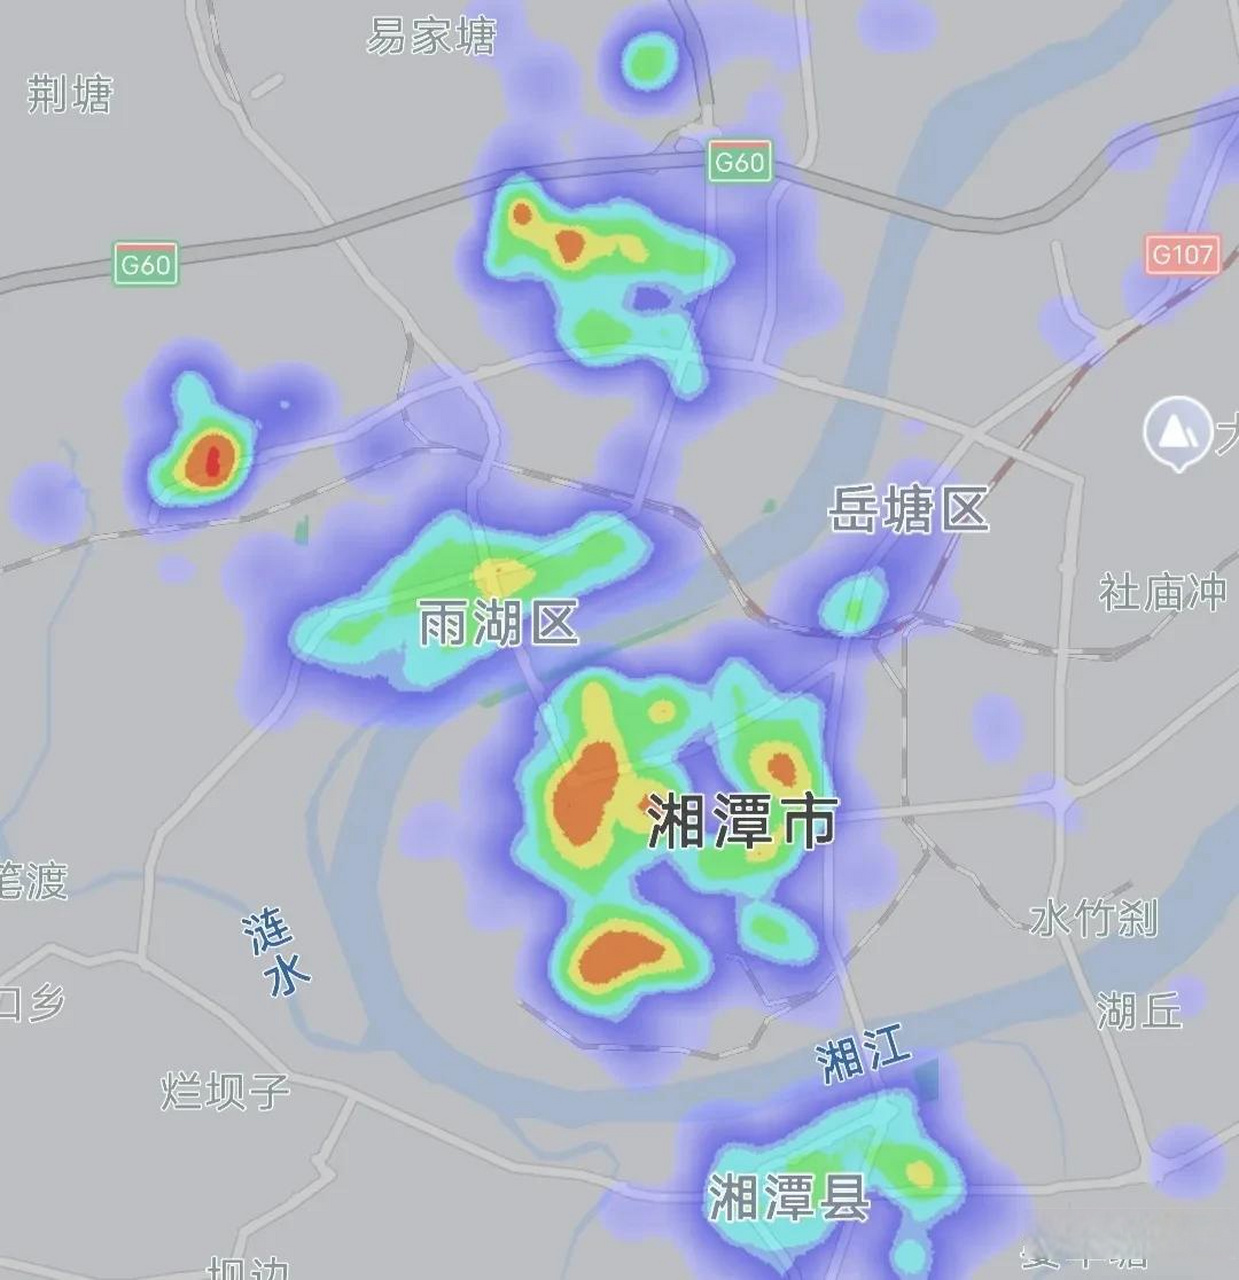 株洲湘潭热力图对比,晚上22:55分相同比例尺下我们看看两座城市有何不